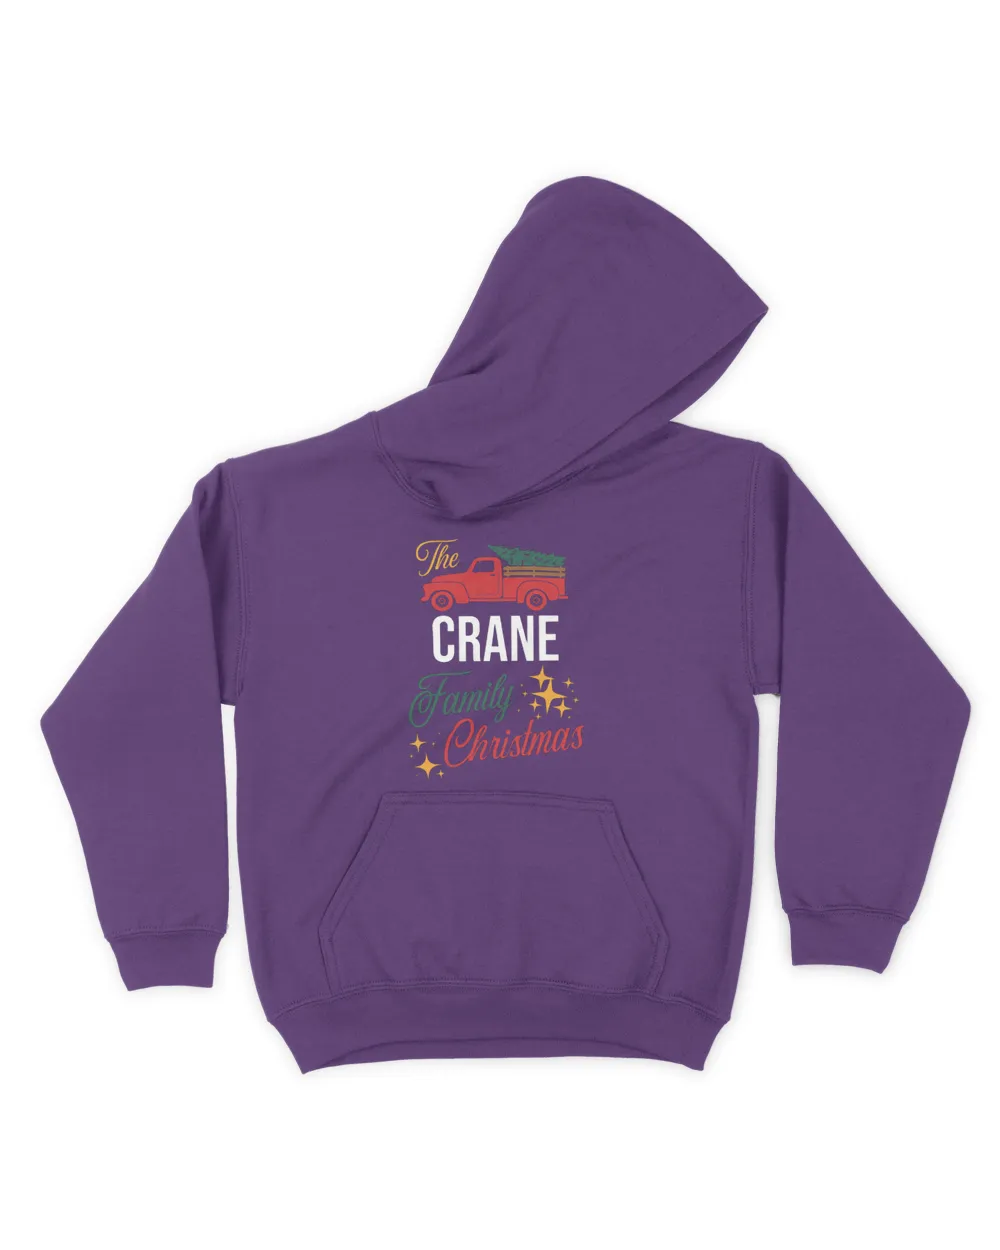 The Crane Family Christmas Matching Pajamas Group Gift